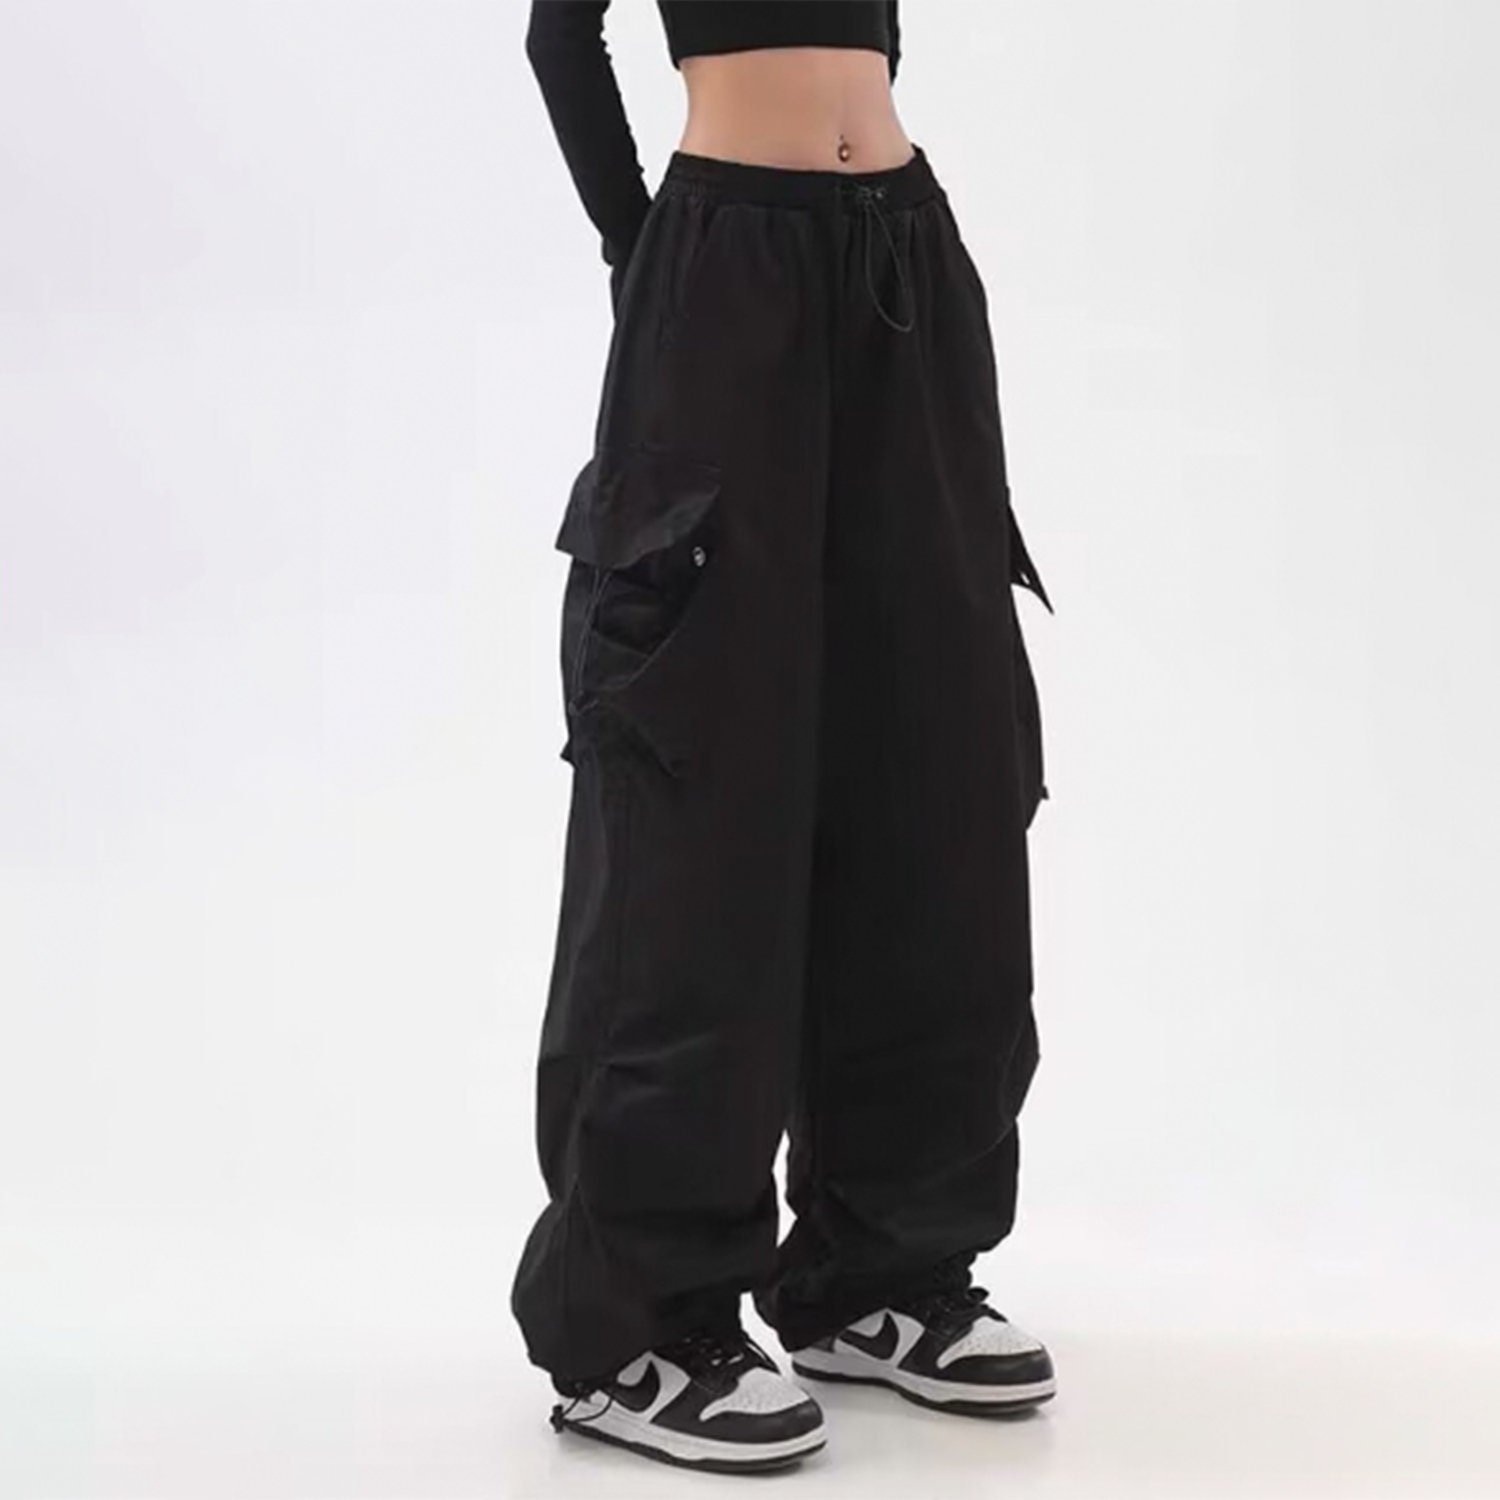 Y2K Baggy Cargo Pants for Women - Minimalist Streetwear Hip Hop Style